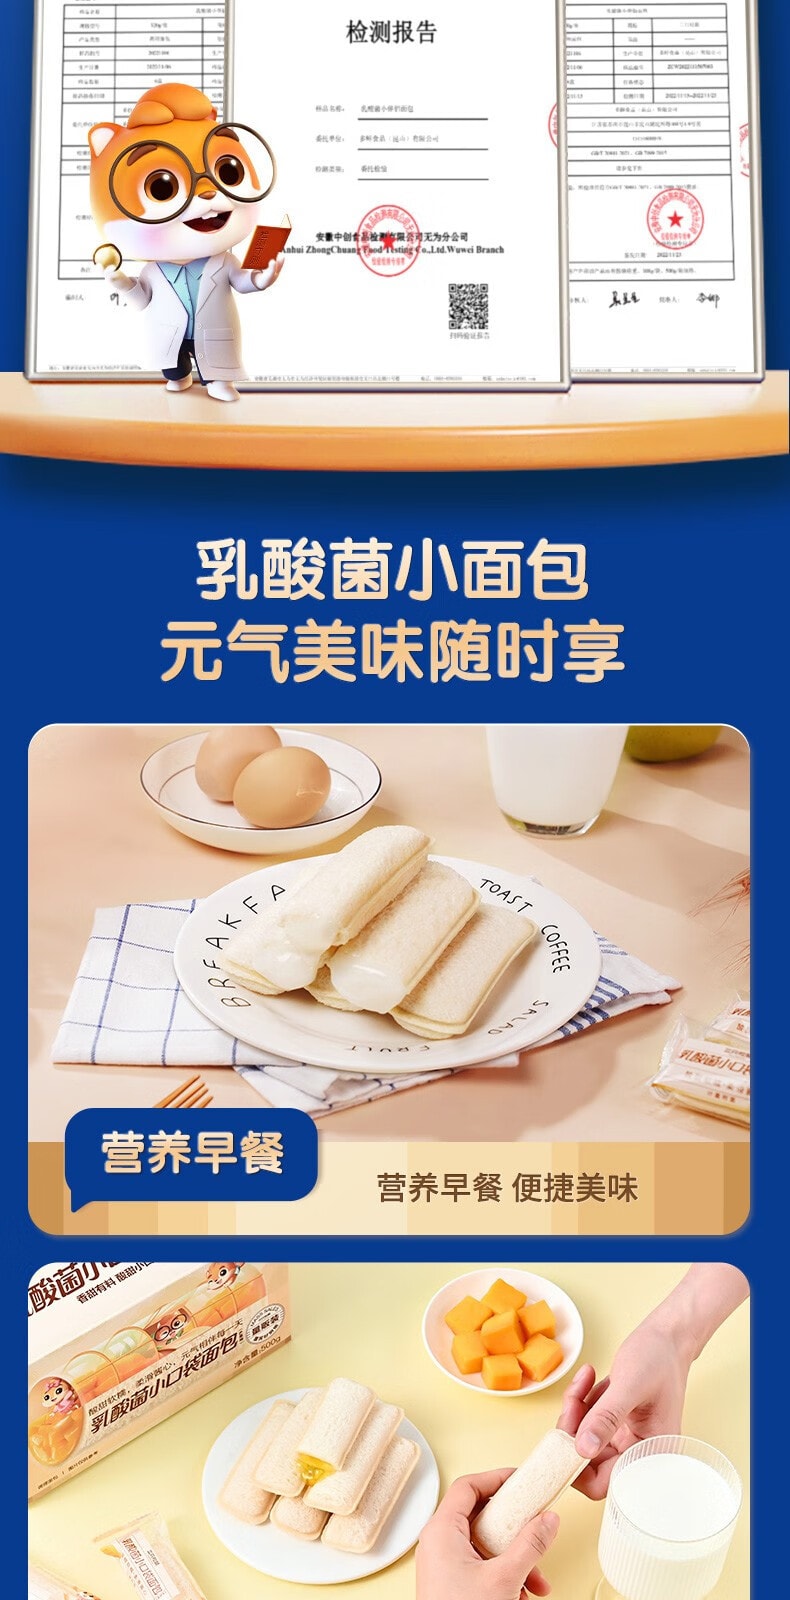 【中国直邮】三只松鼠 乳酸菌小口袋夹心面包 浓郁酸奶味500g/箱【高颜值营养早餐】